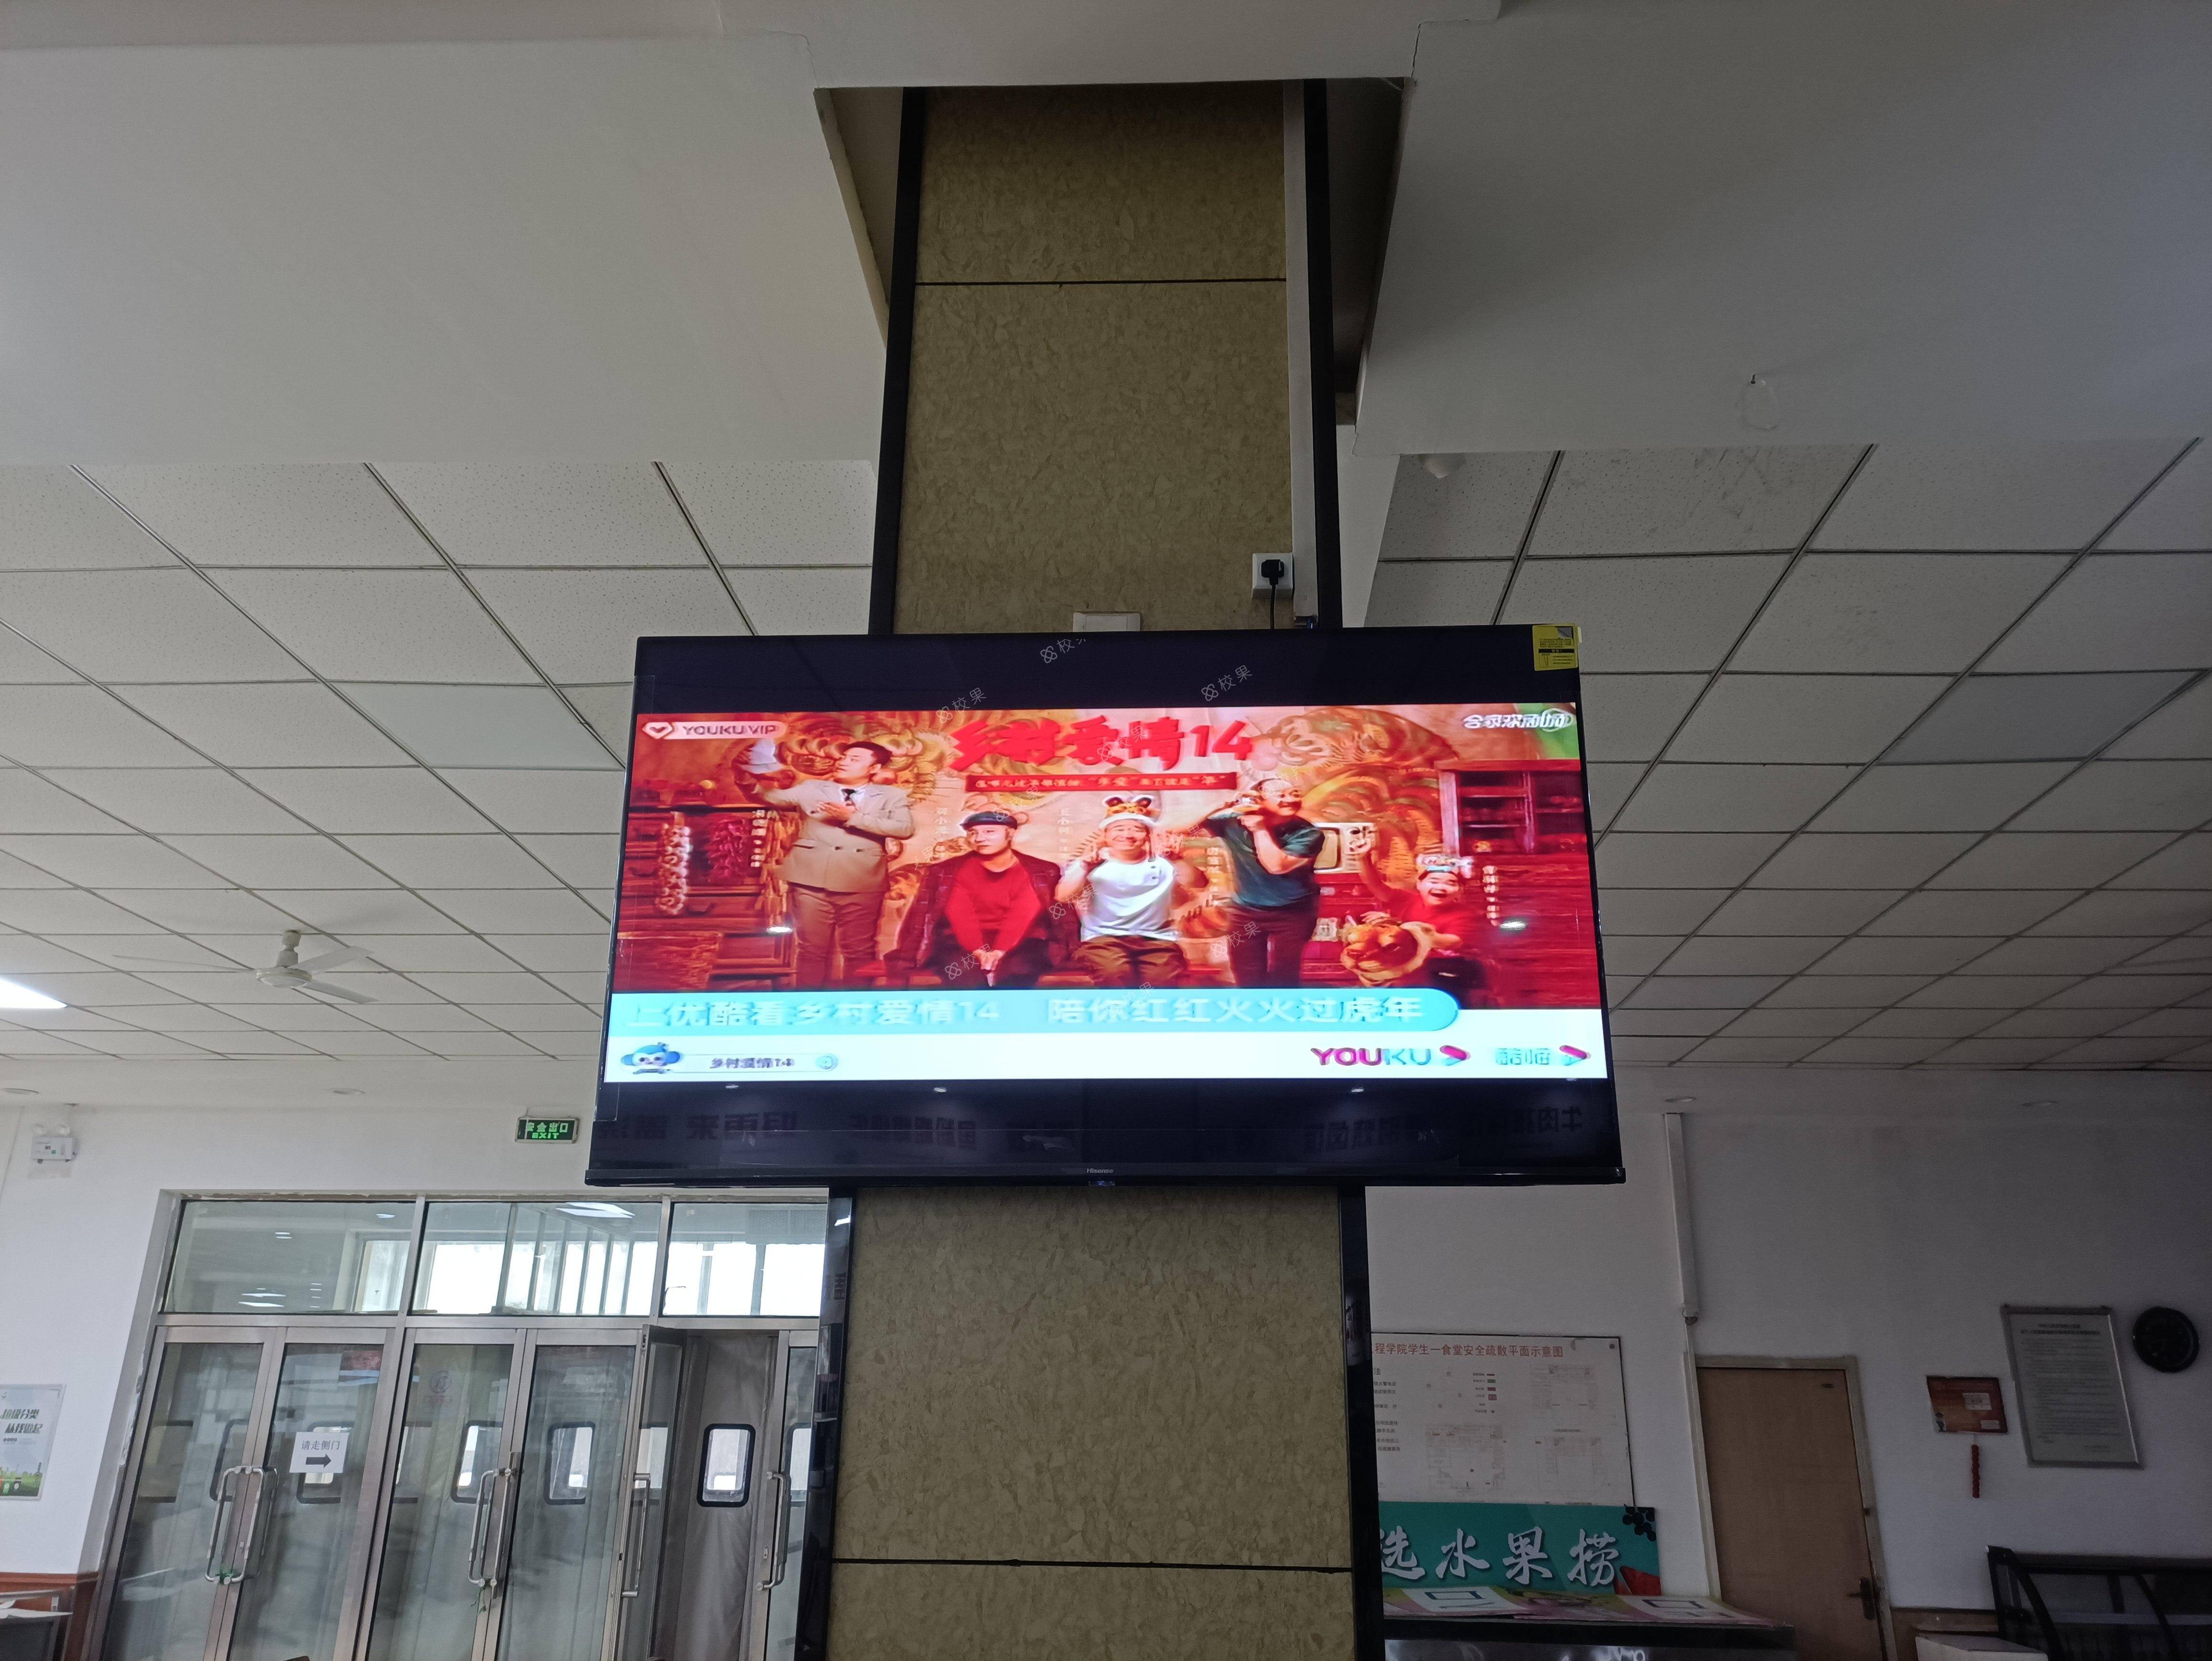 液晶屏广告 上海邦德职业技术学院